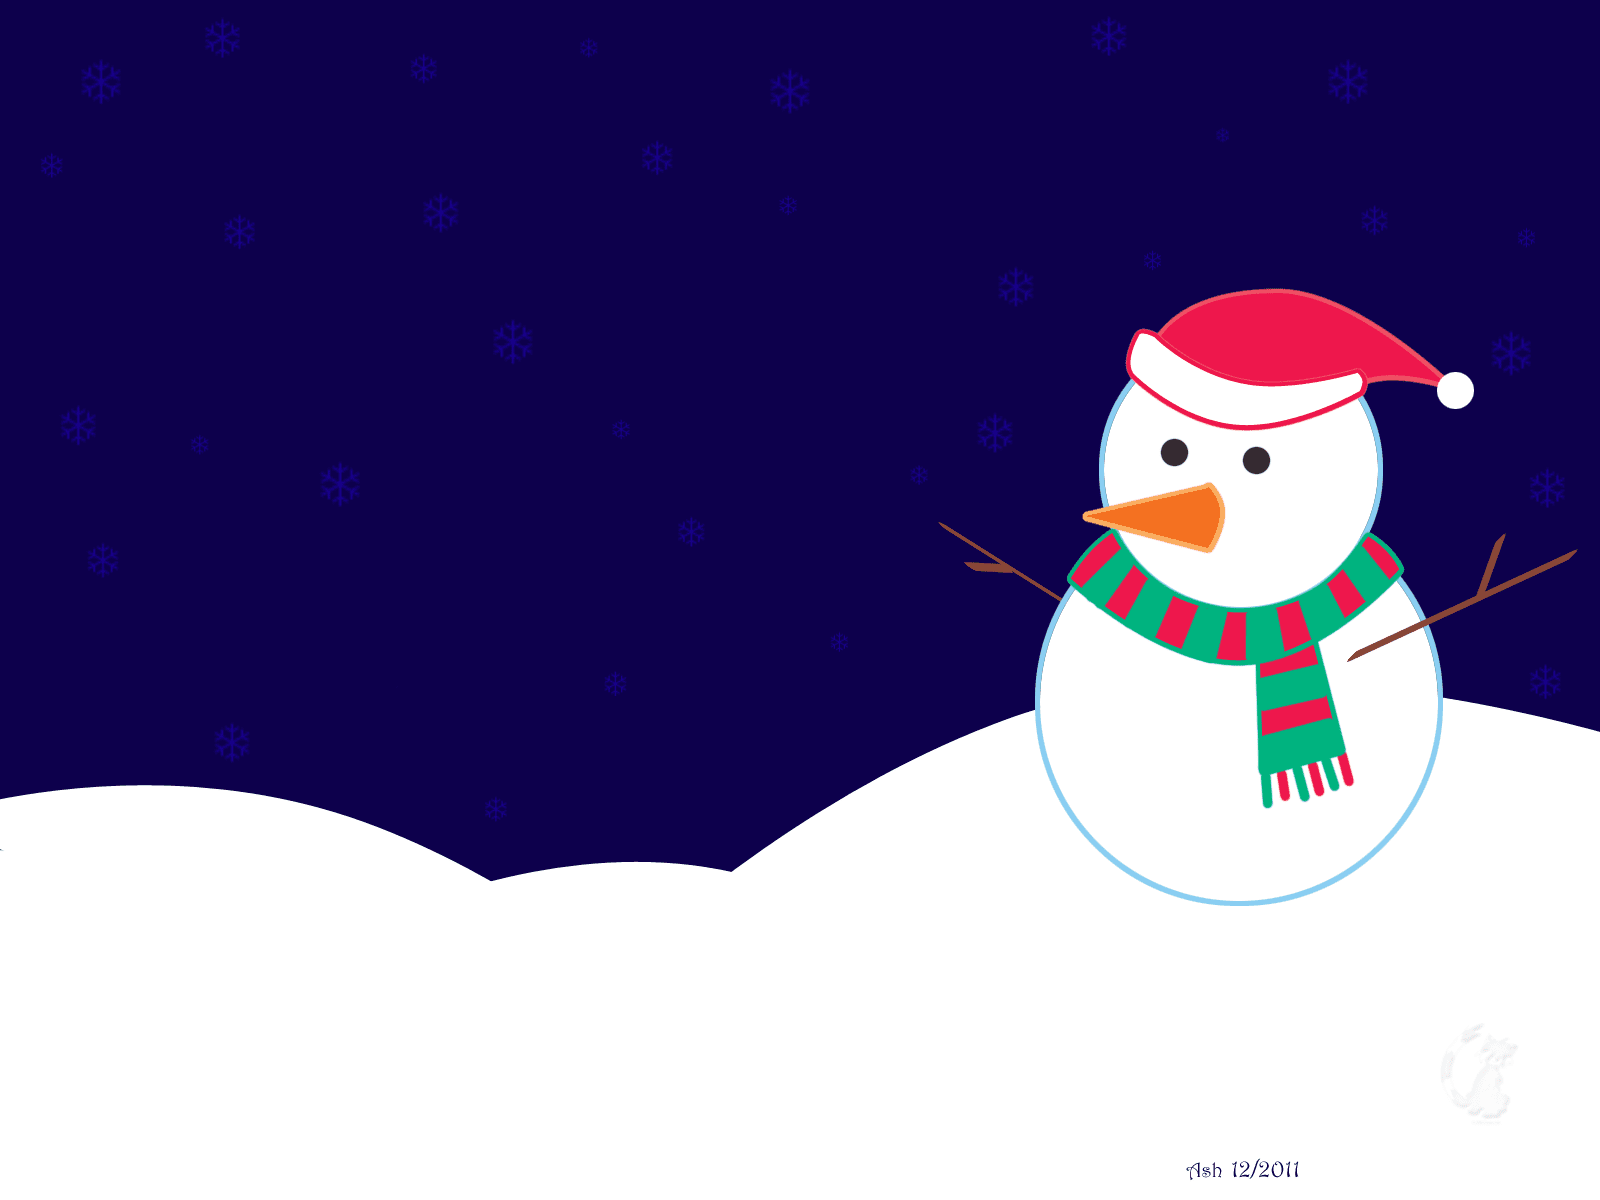 Papel de parede de Natal grátis com um boneco de neve com um chapéu de Papai Noel